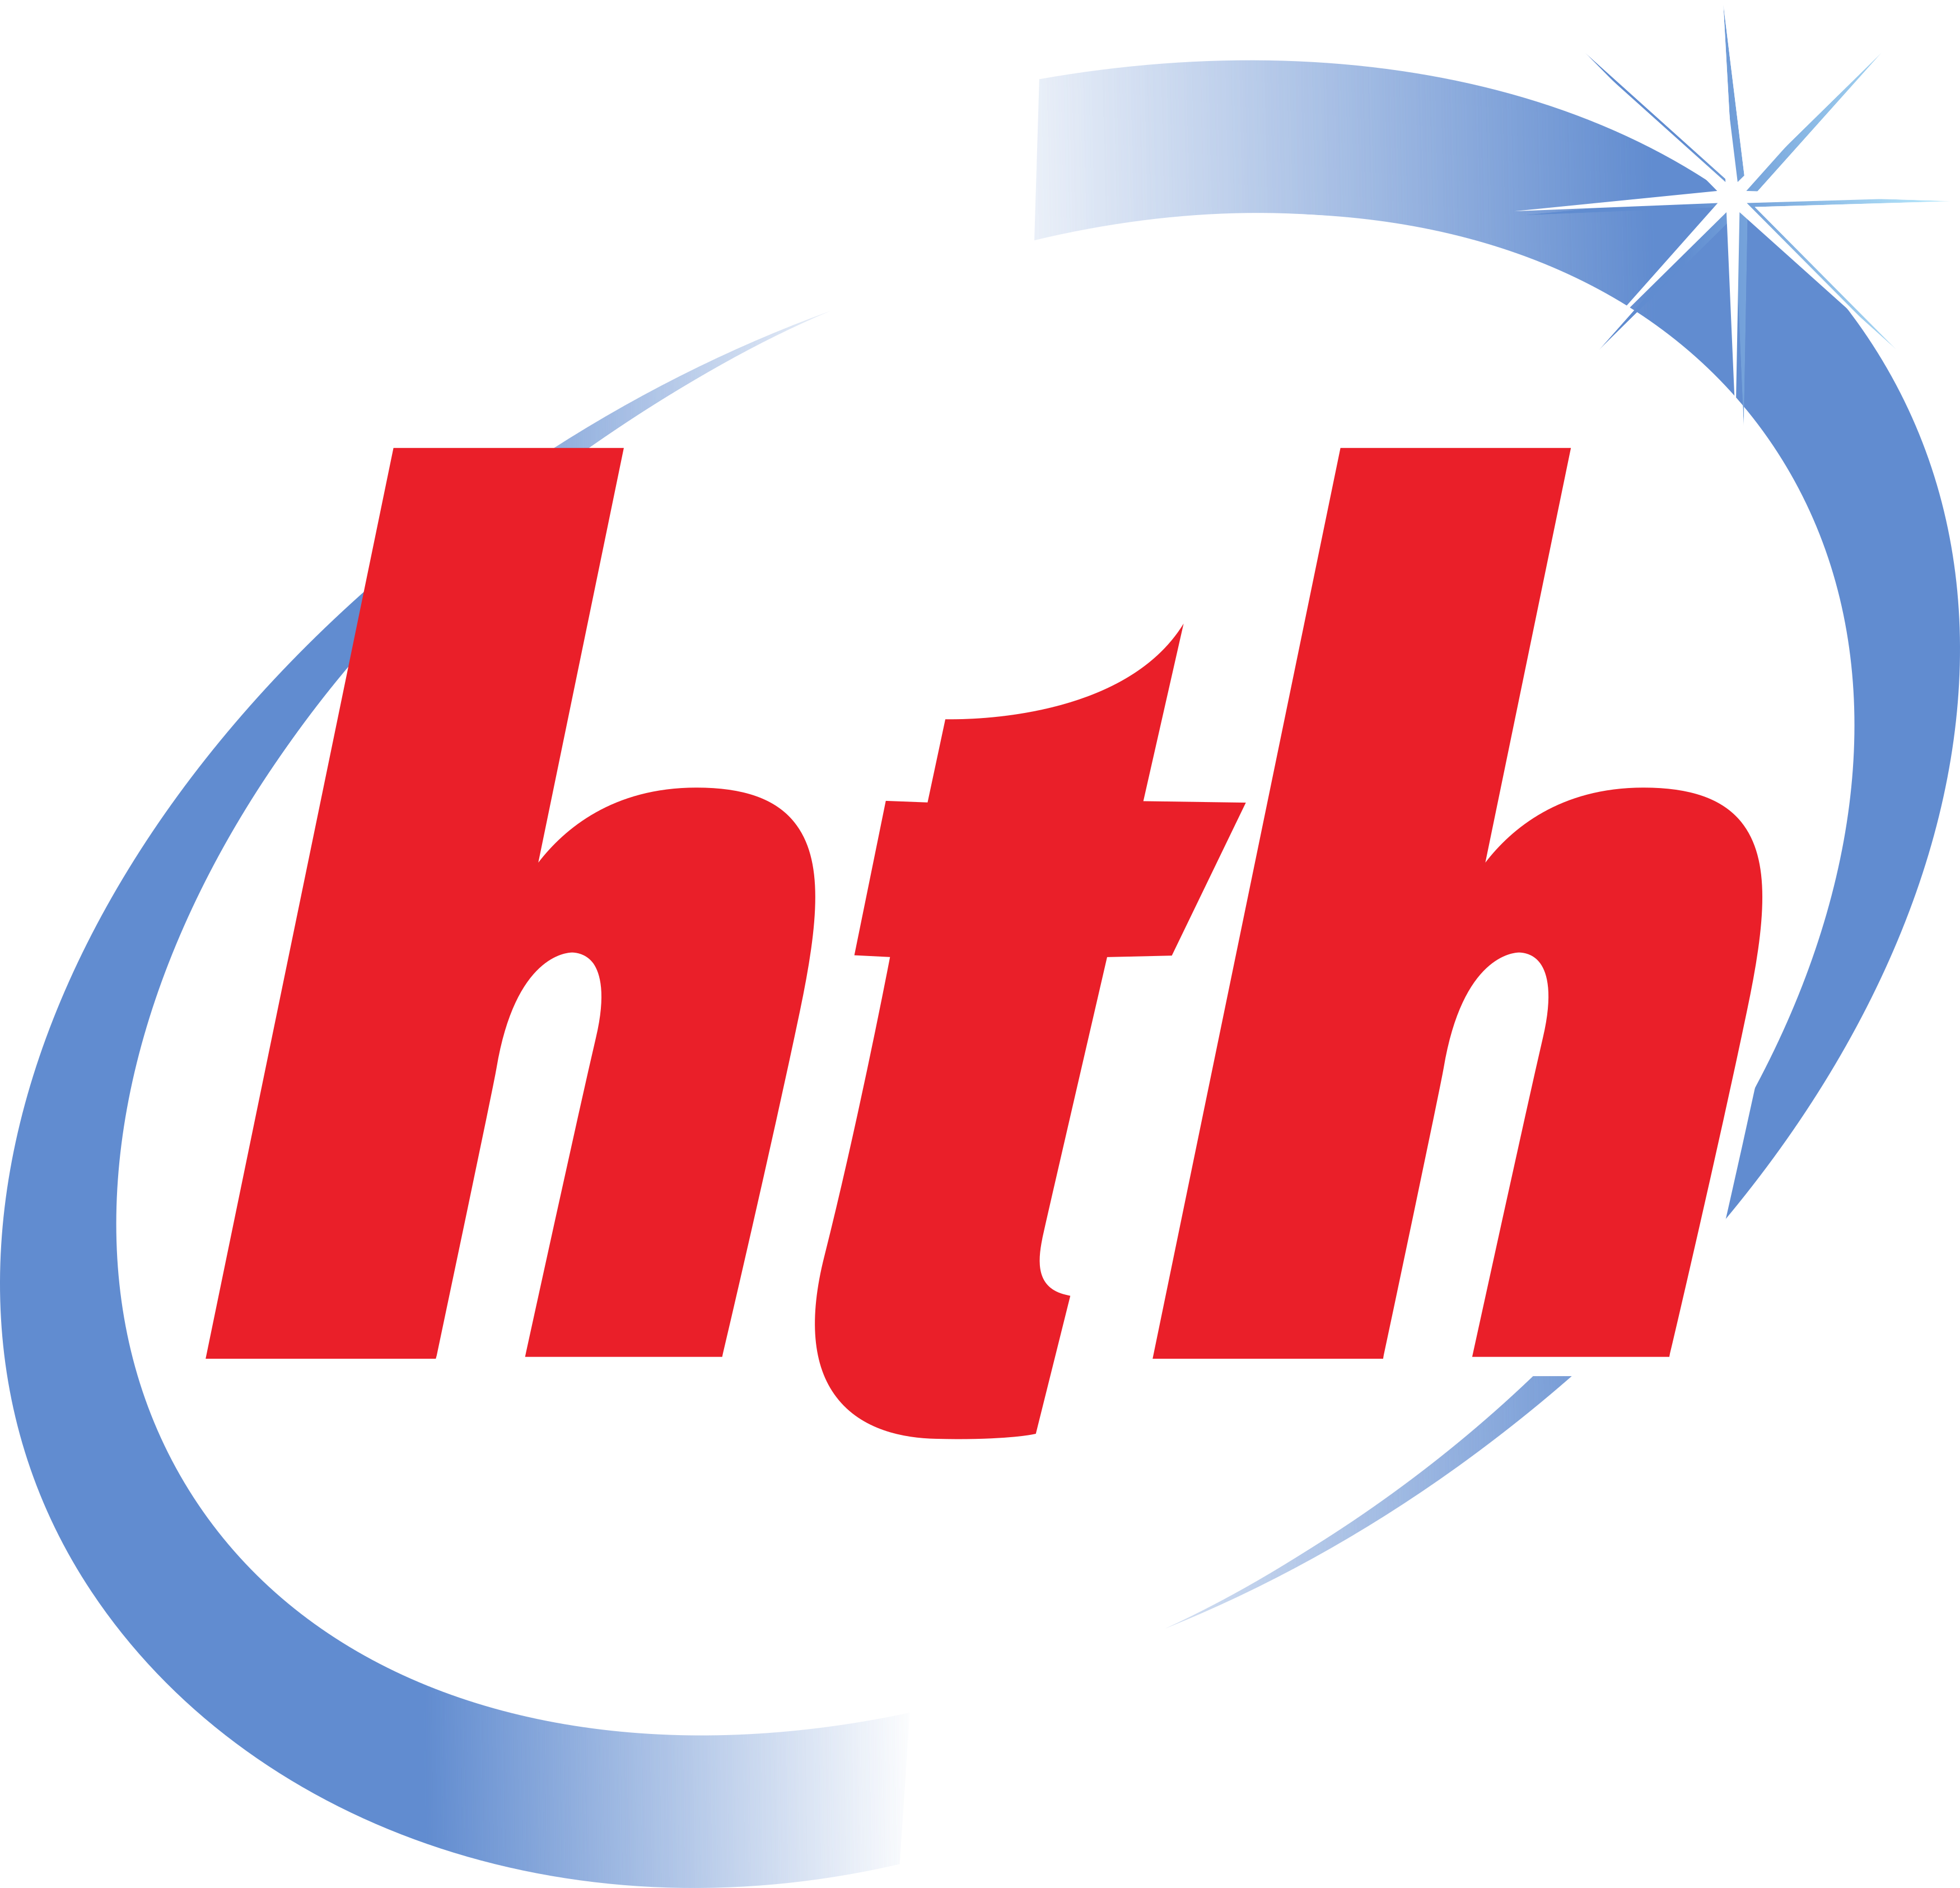 logo-hth.png